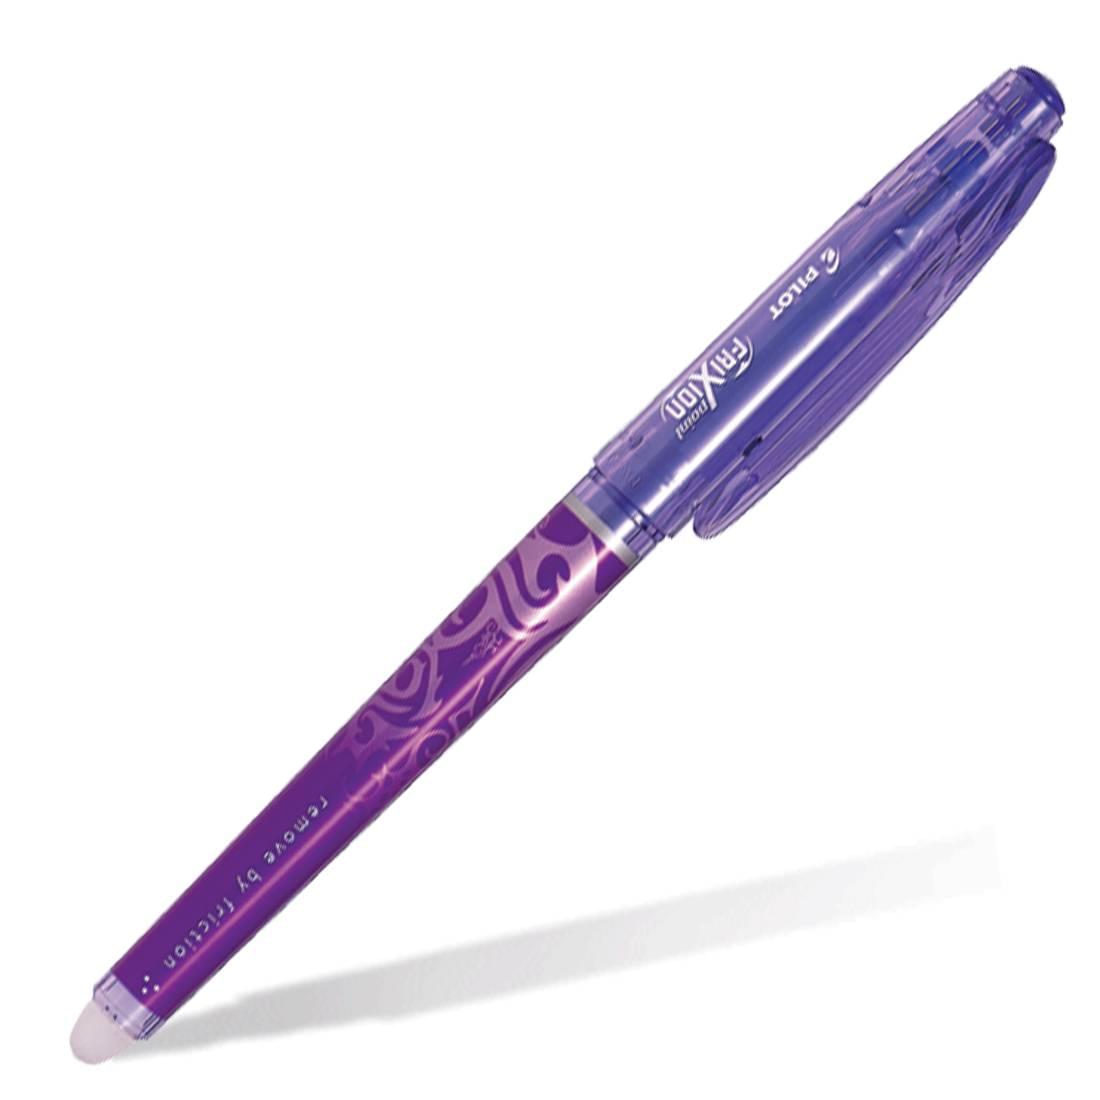 Ручка за 5 рублей. Ручка стирающаяся Pilot Frixion 0.5. Pilot Frixion фиолетовая. Ручка пилот пиши стирай. Ручки пилот пиши стирай 0.5.